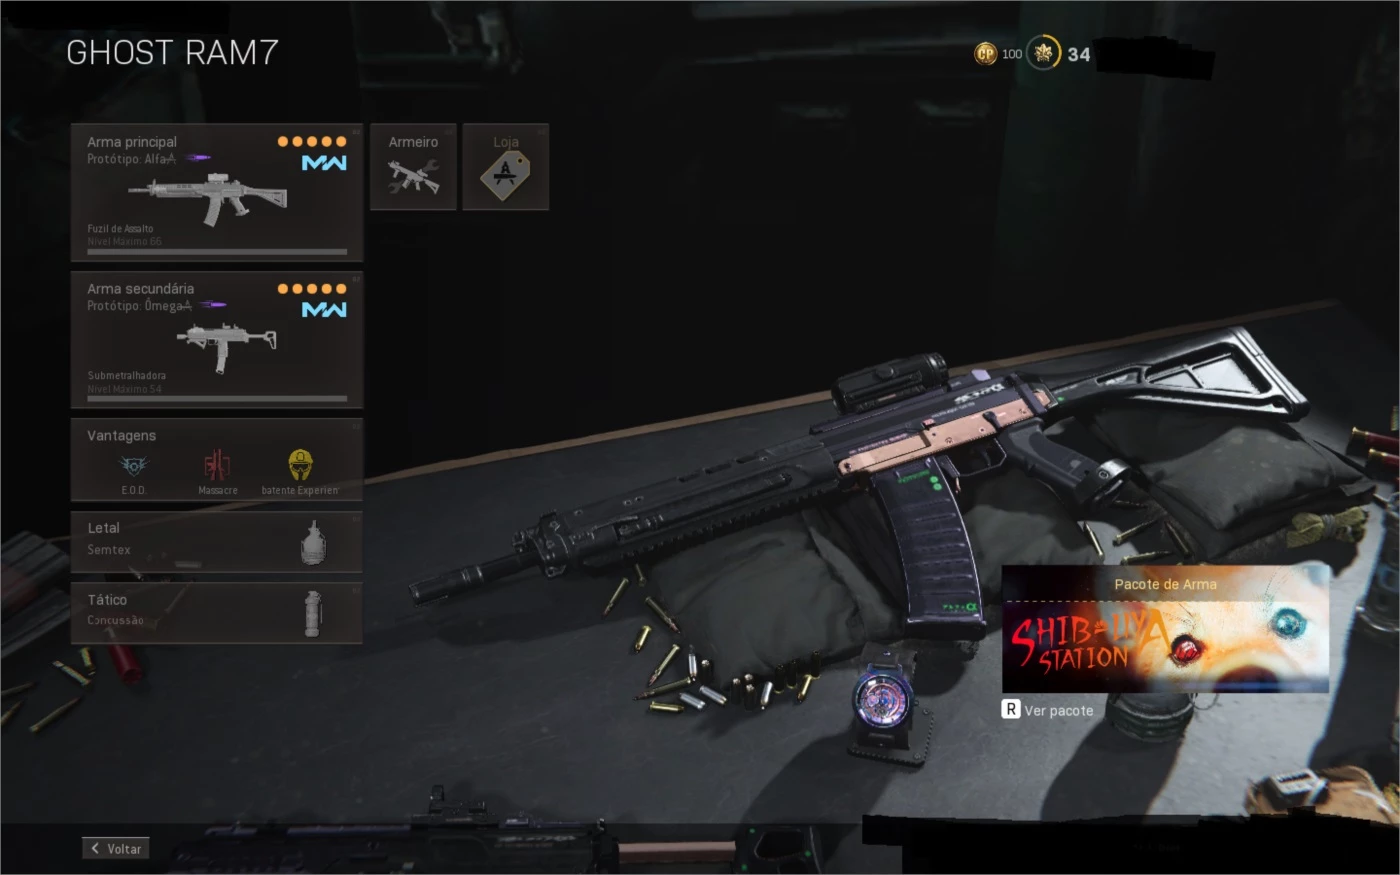 Call of Duty®: Warzone™ Mobile  Códigos de recarga y prepago - SEAGM